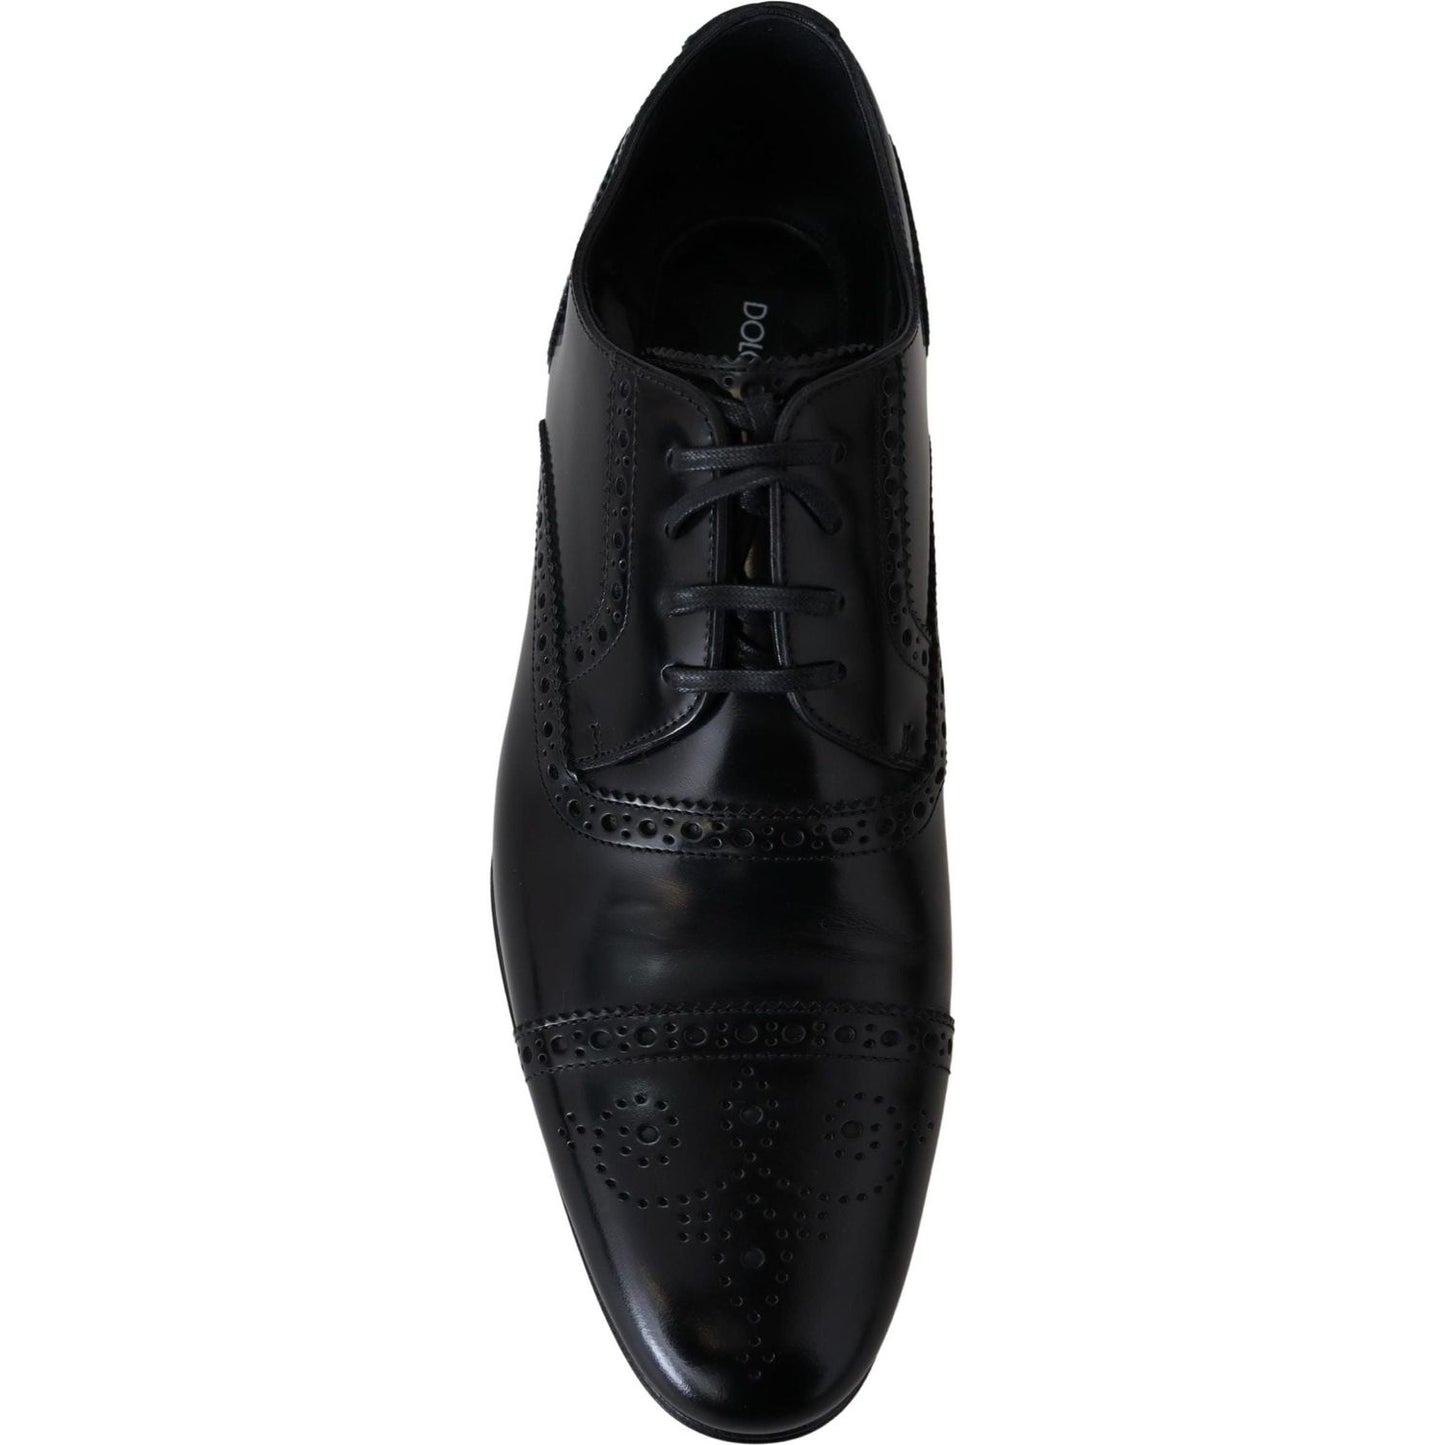 Dolce & Gabbana Elegant Black Leather Formal Derby Shoes black-leather-men-derby-formal-loafers-shoes